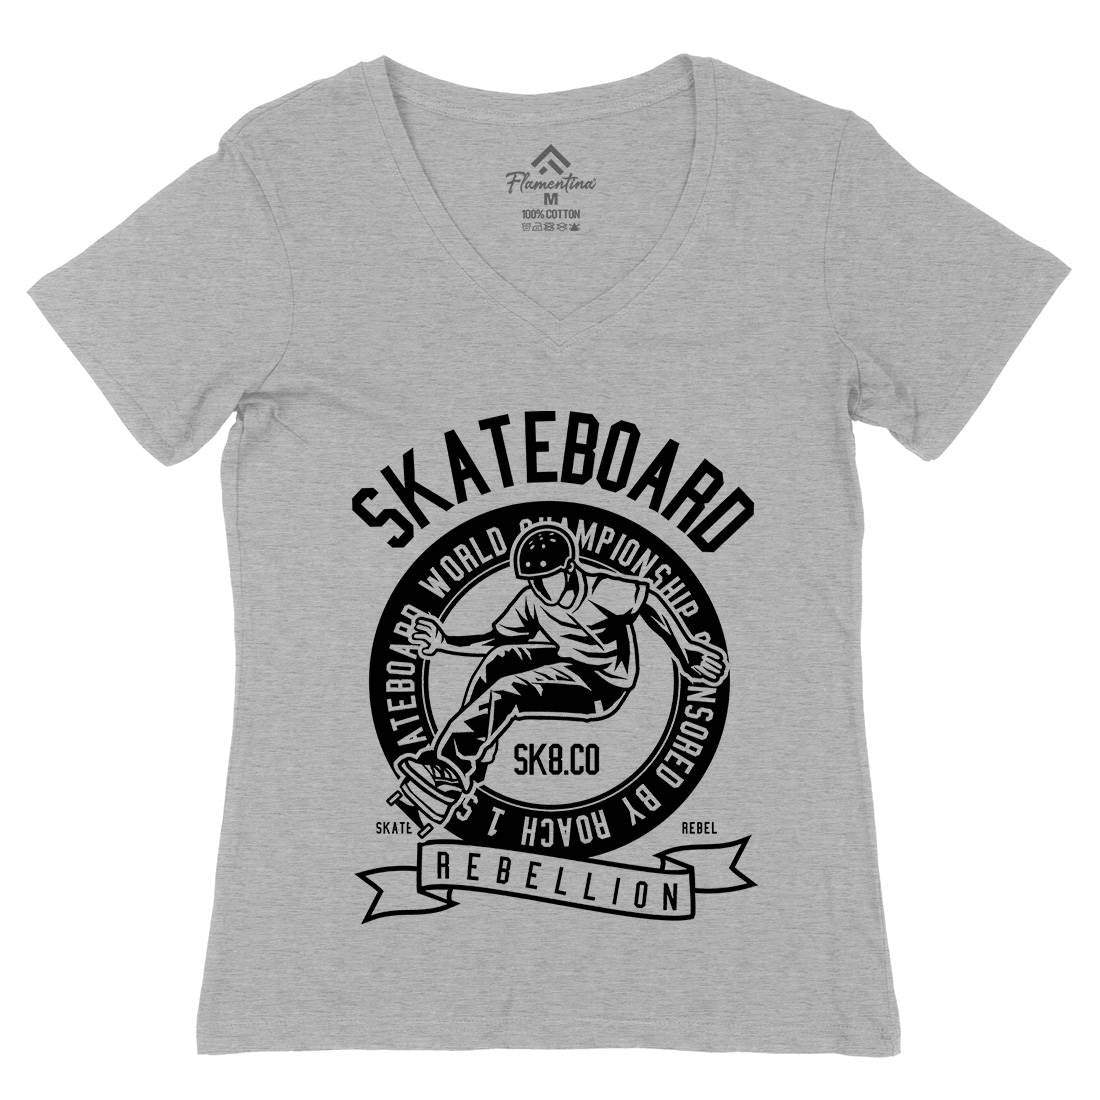 Skateboard Rebellion Womens Organic V-Neck T-Shirt Skate B624